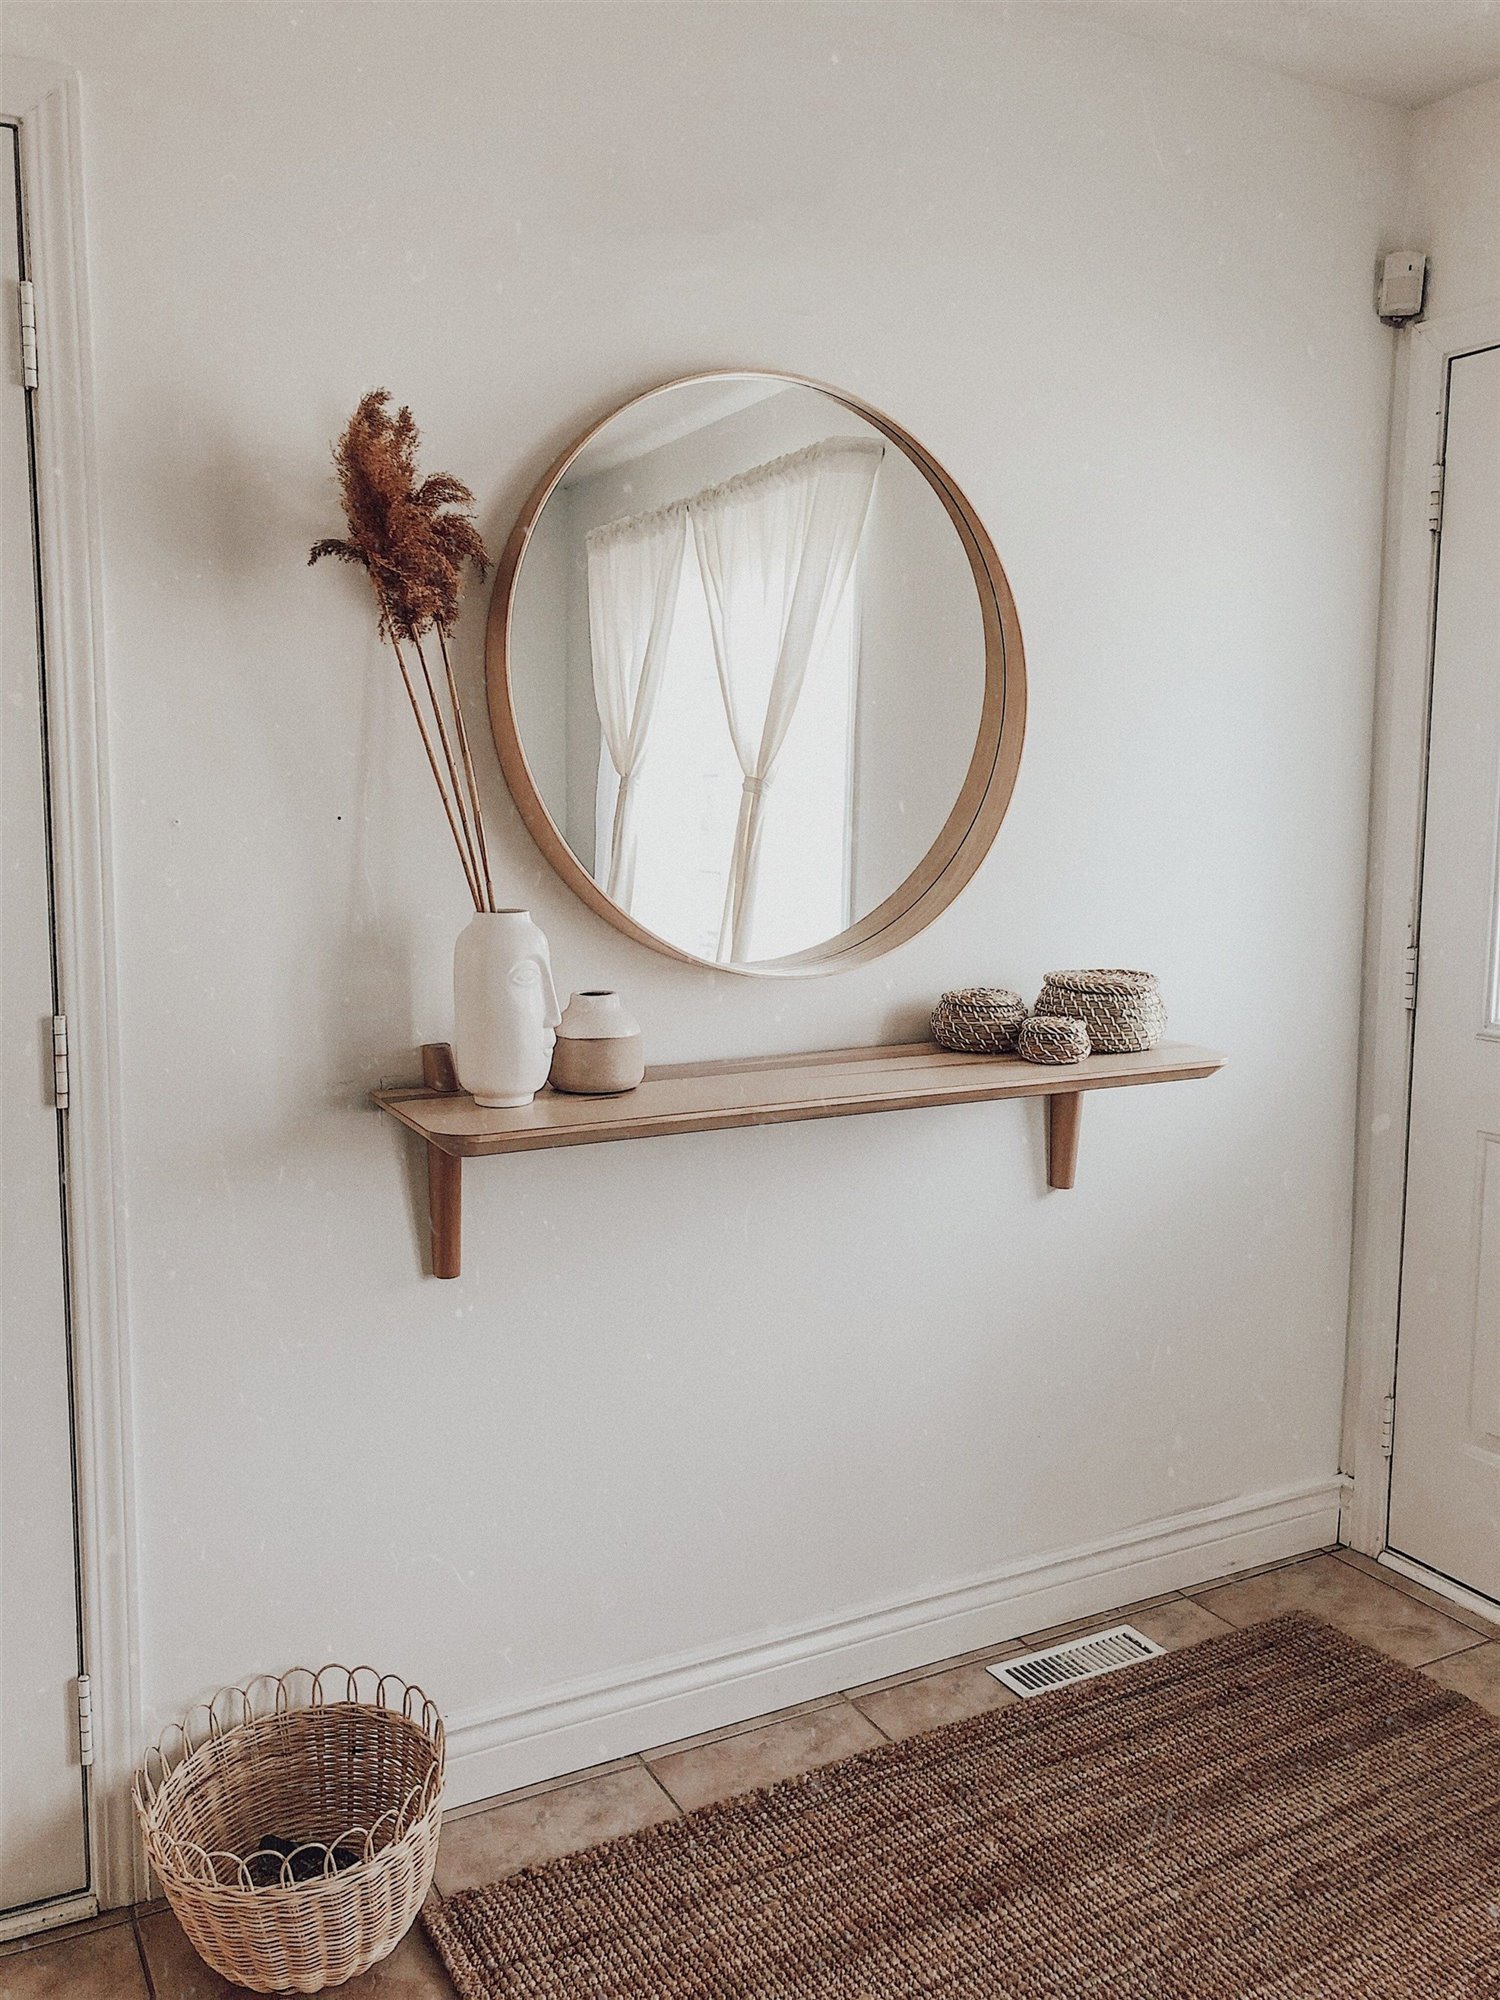 Recibidor entrada de casa con estanteria de madera y espejo redondo